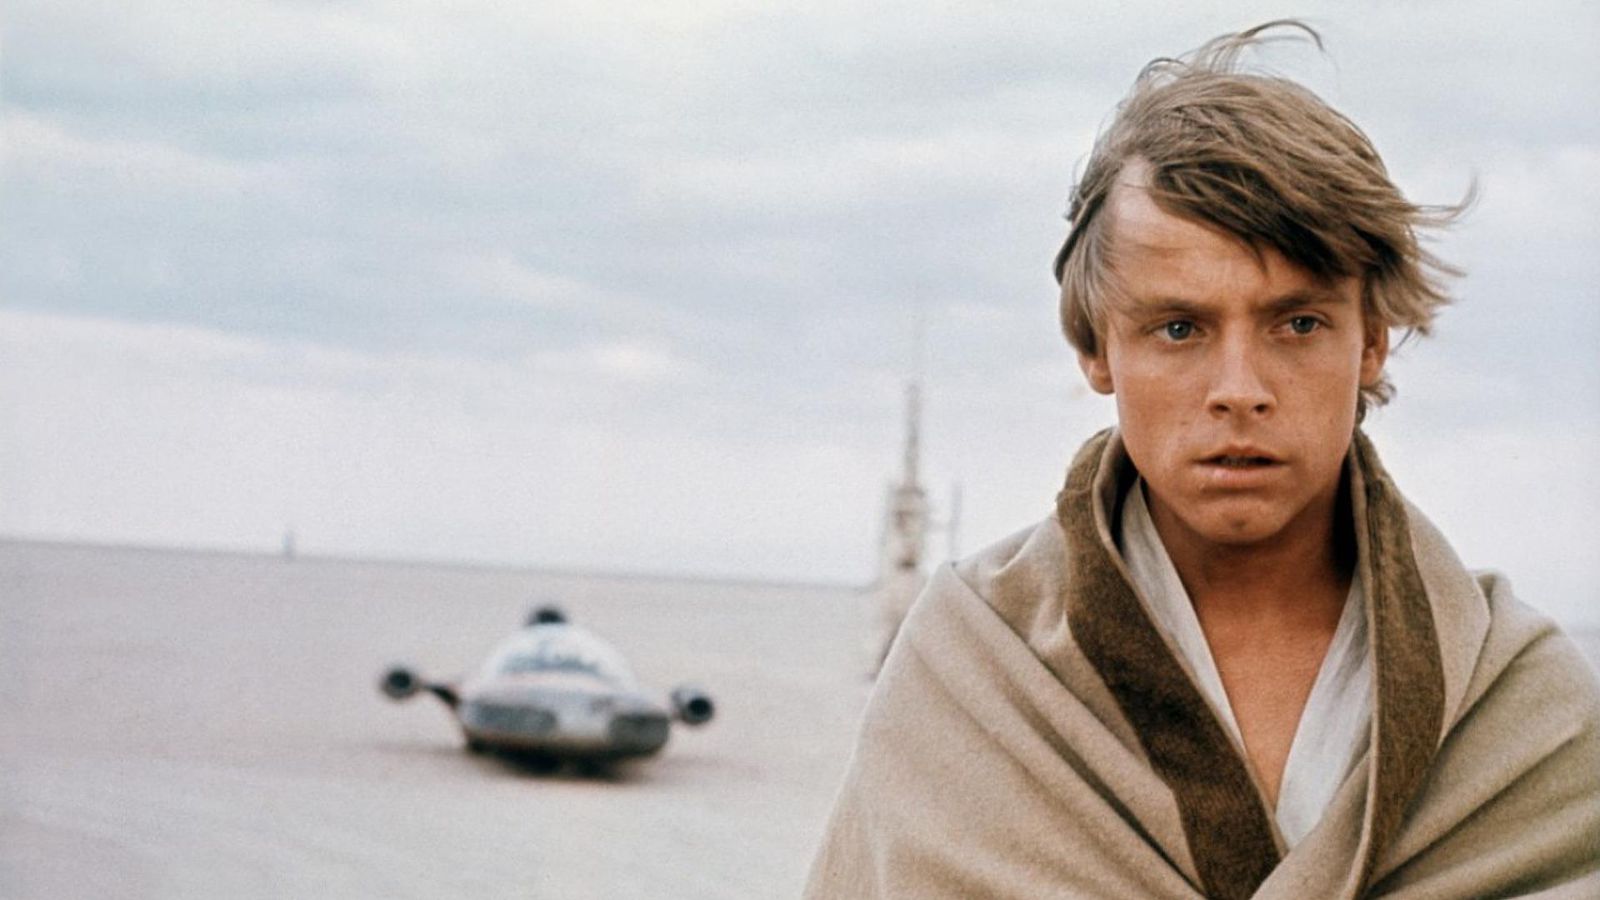 Luke Skywalker, classical hero